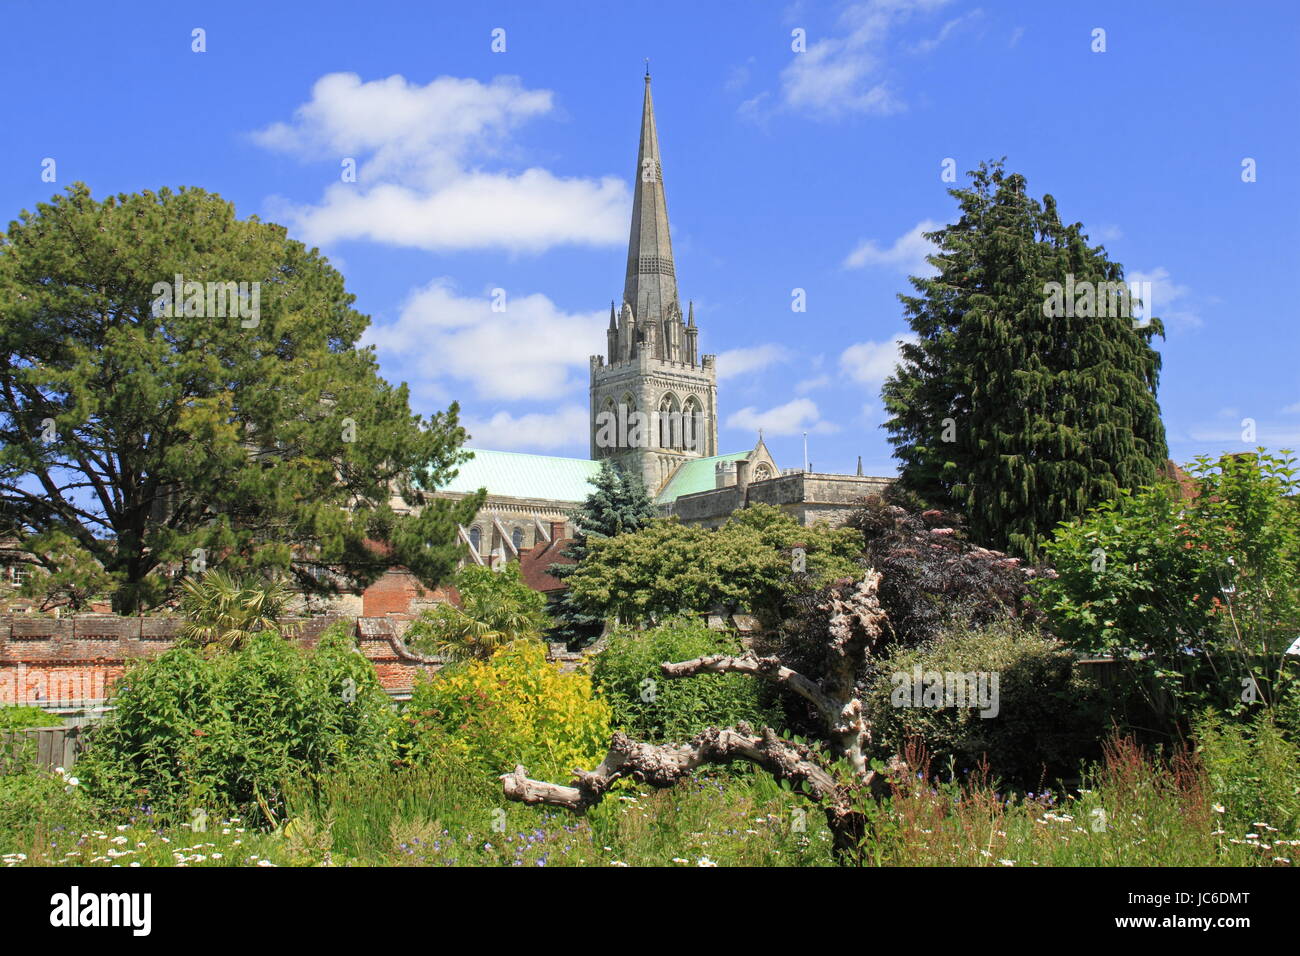 Palazzo del Vescovo giardino, Chichester Cathedral, Chichester, West Sussex, in Inghilterra, in Gran Bretagna, Regno Unito, Gran Bretagna, Europa Foto Stock